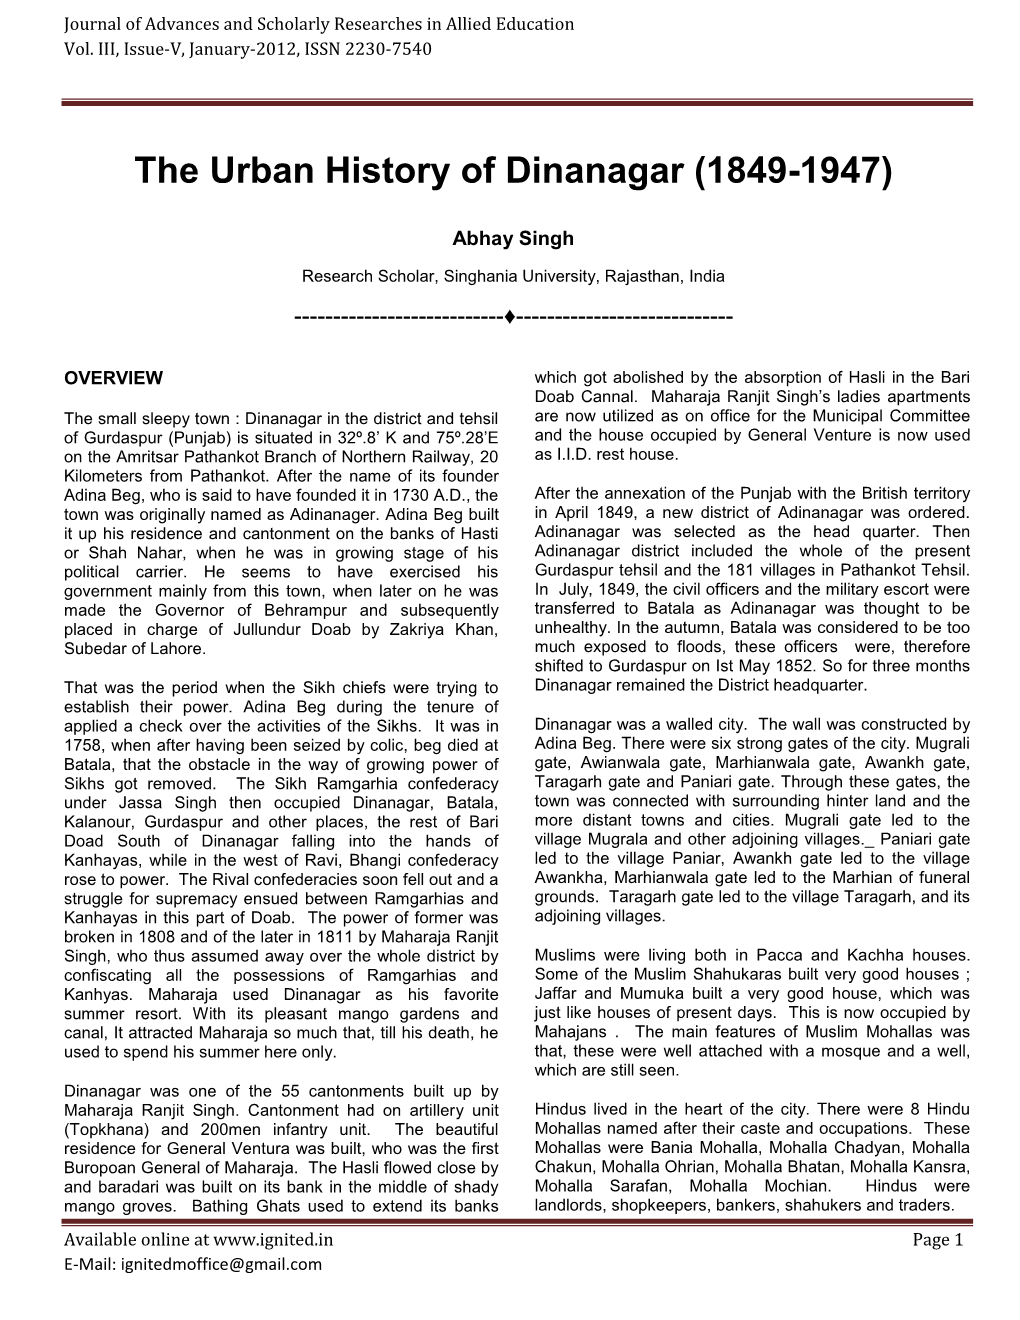 The Urban History of Dinanagar (1849-1947)